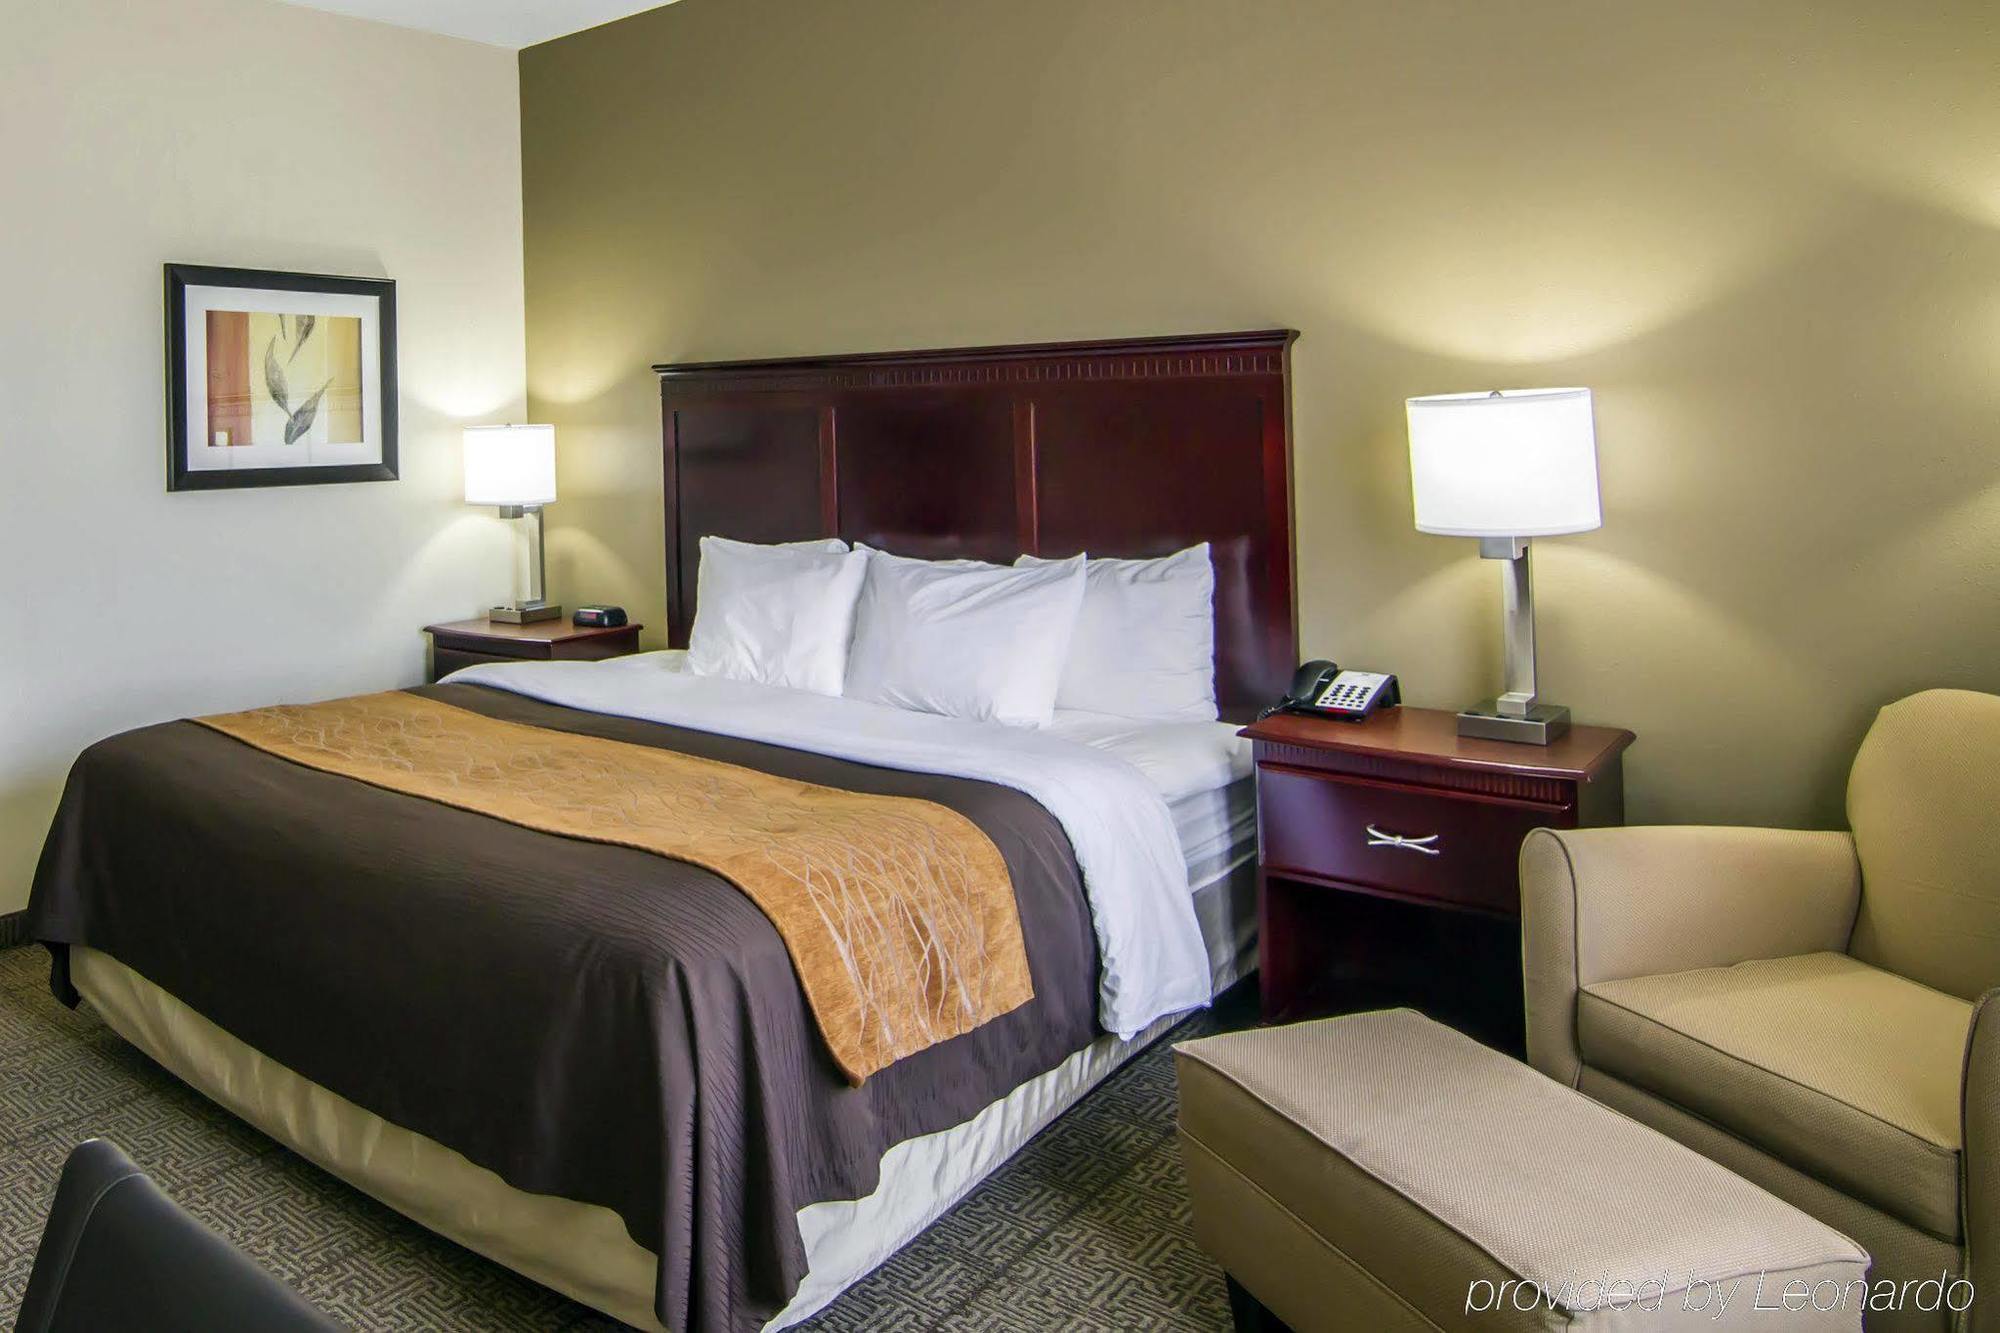 Comfort Inn & Suites Love Field - Dallas Market Center Экстерьер фото